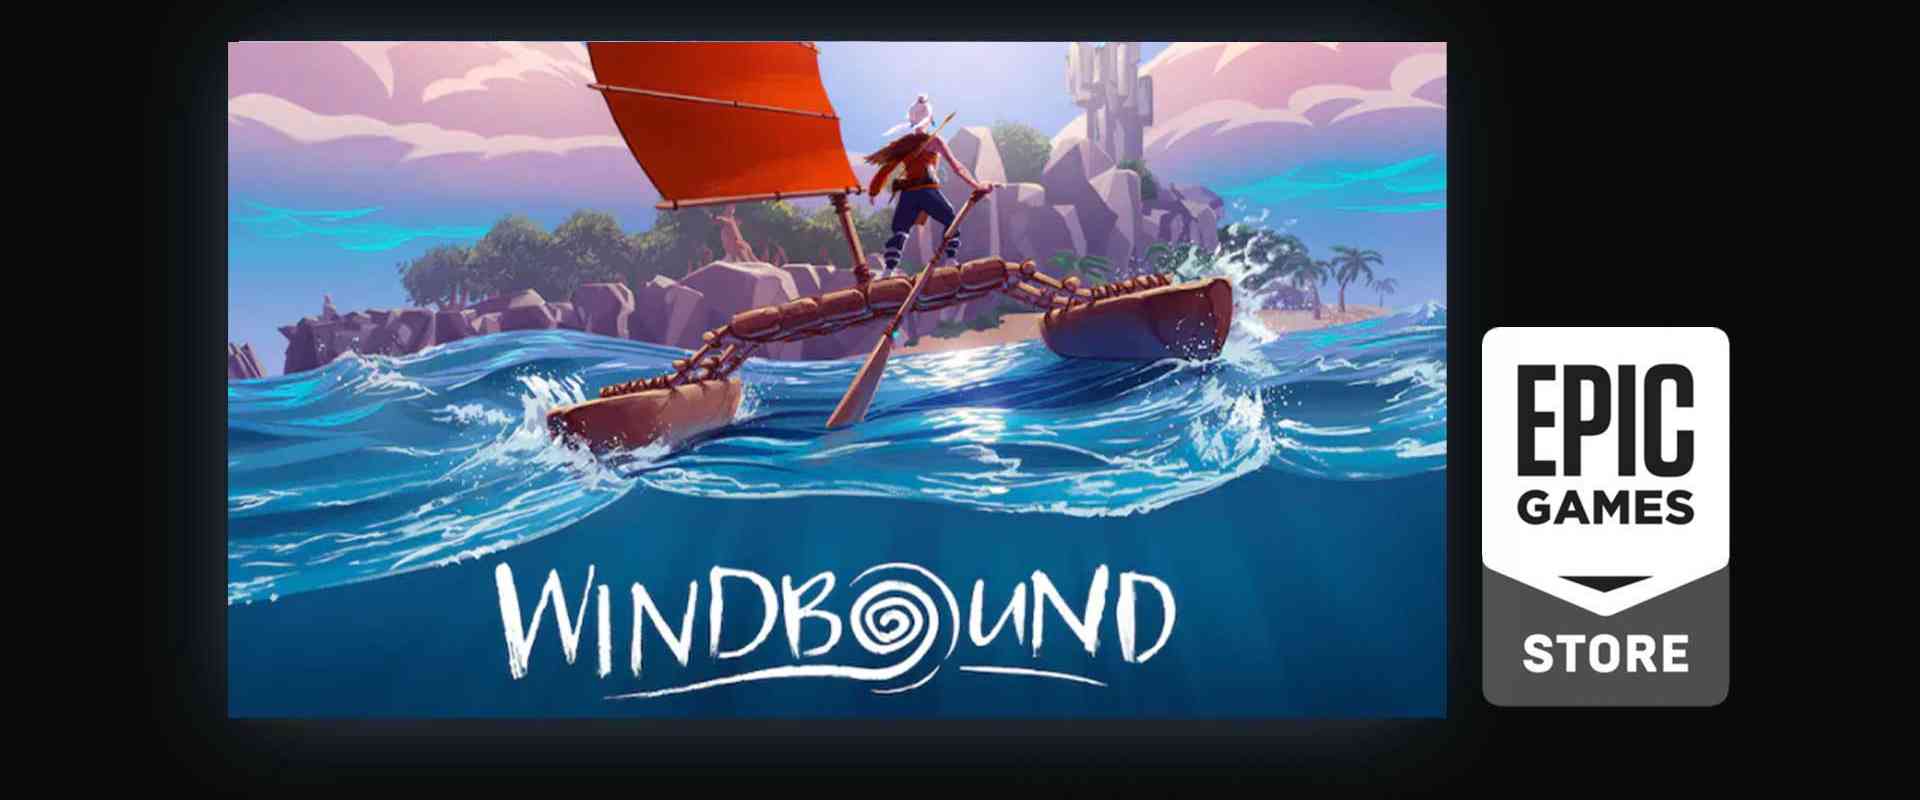 epic game free game windbound